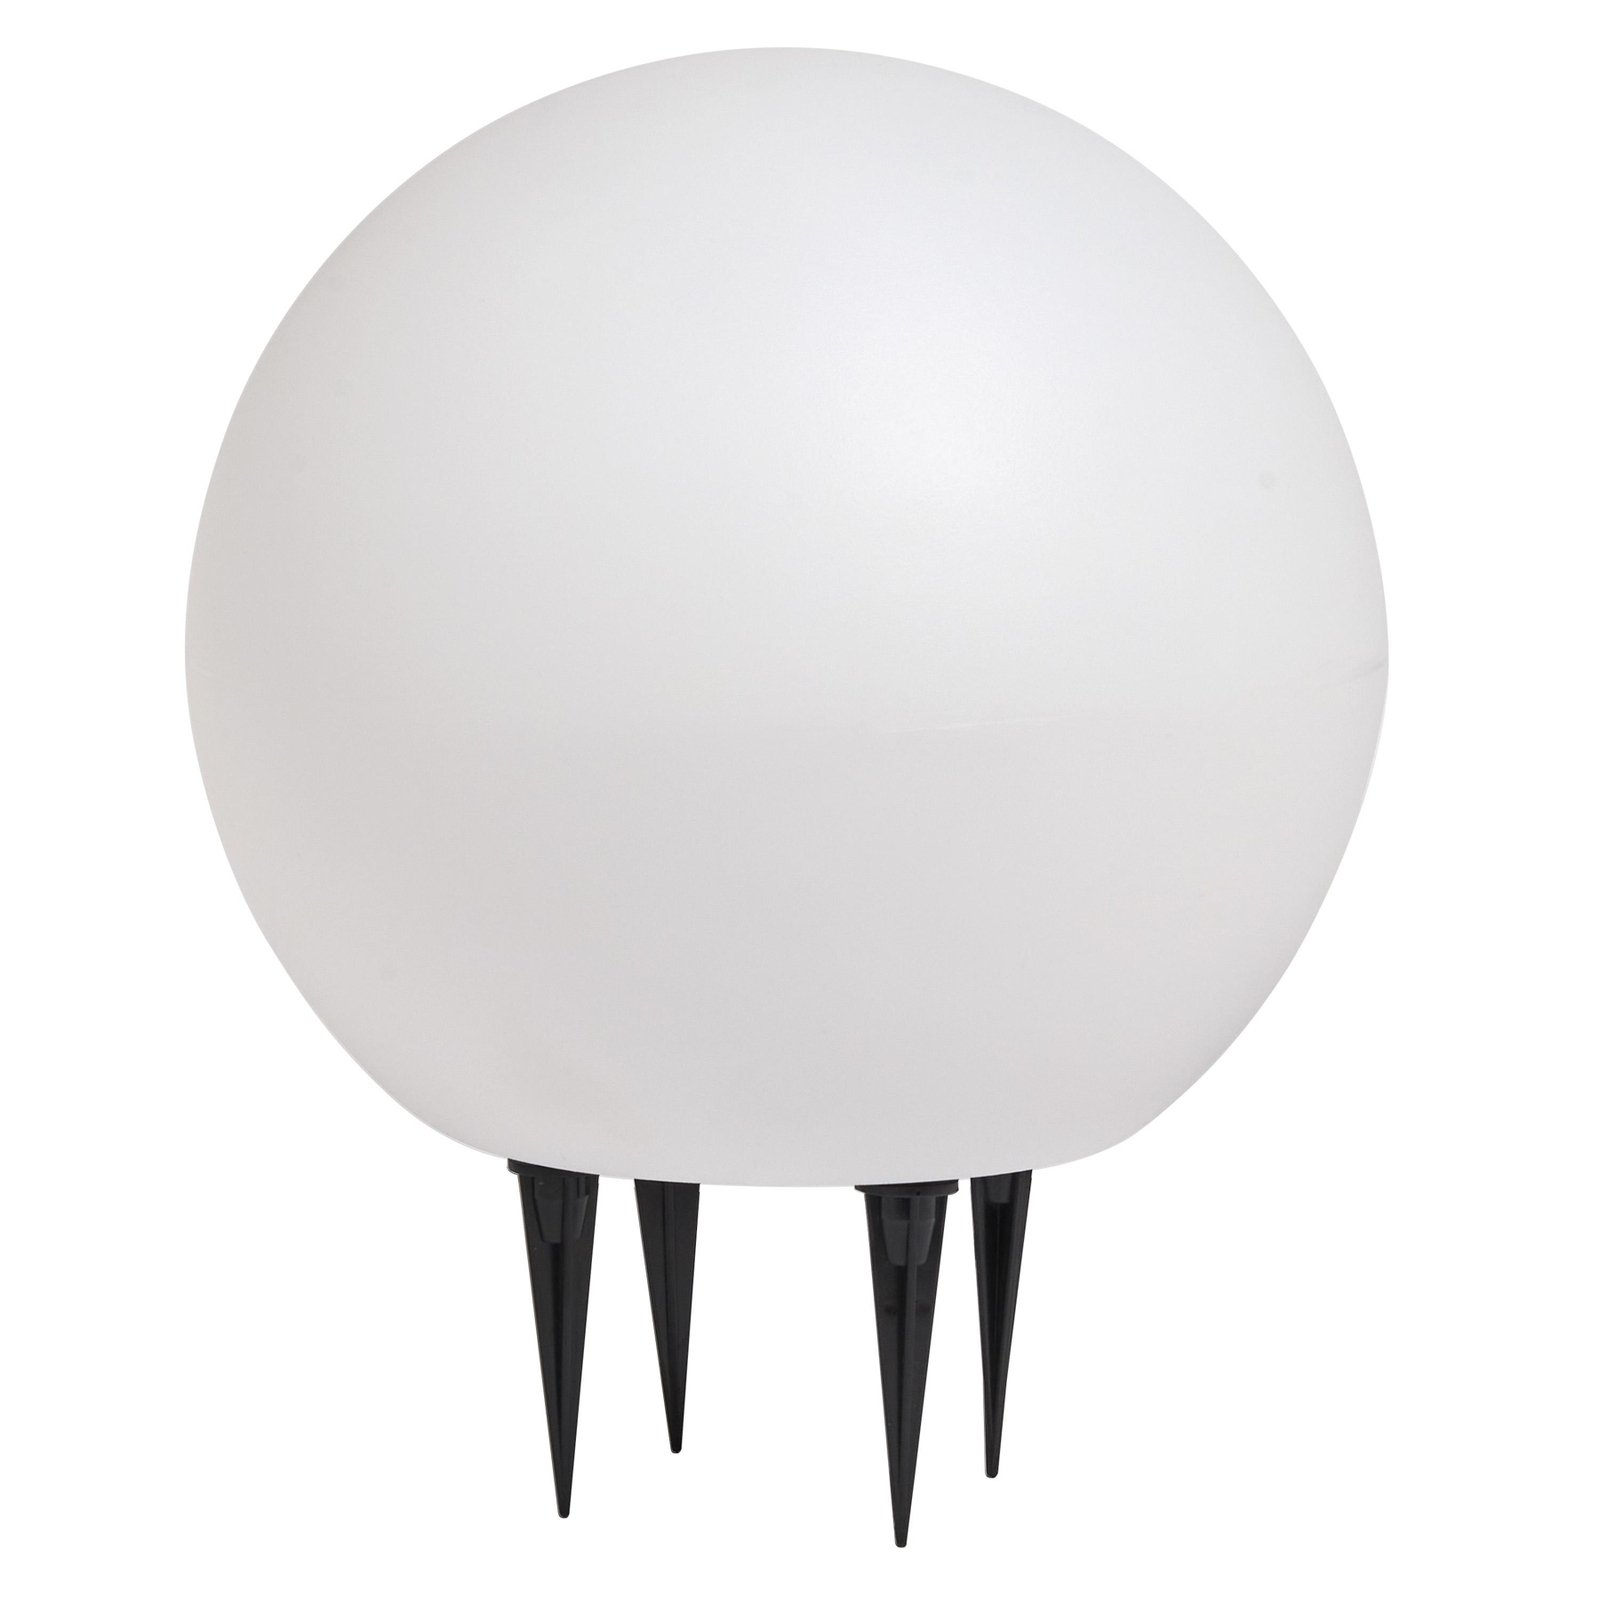 LEDVANCE LED ground spike light Endura Hybrid Ball 2W, white